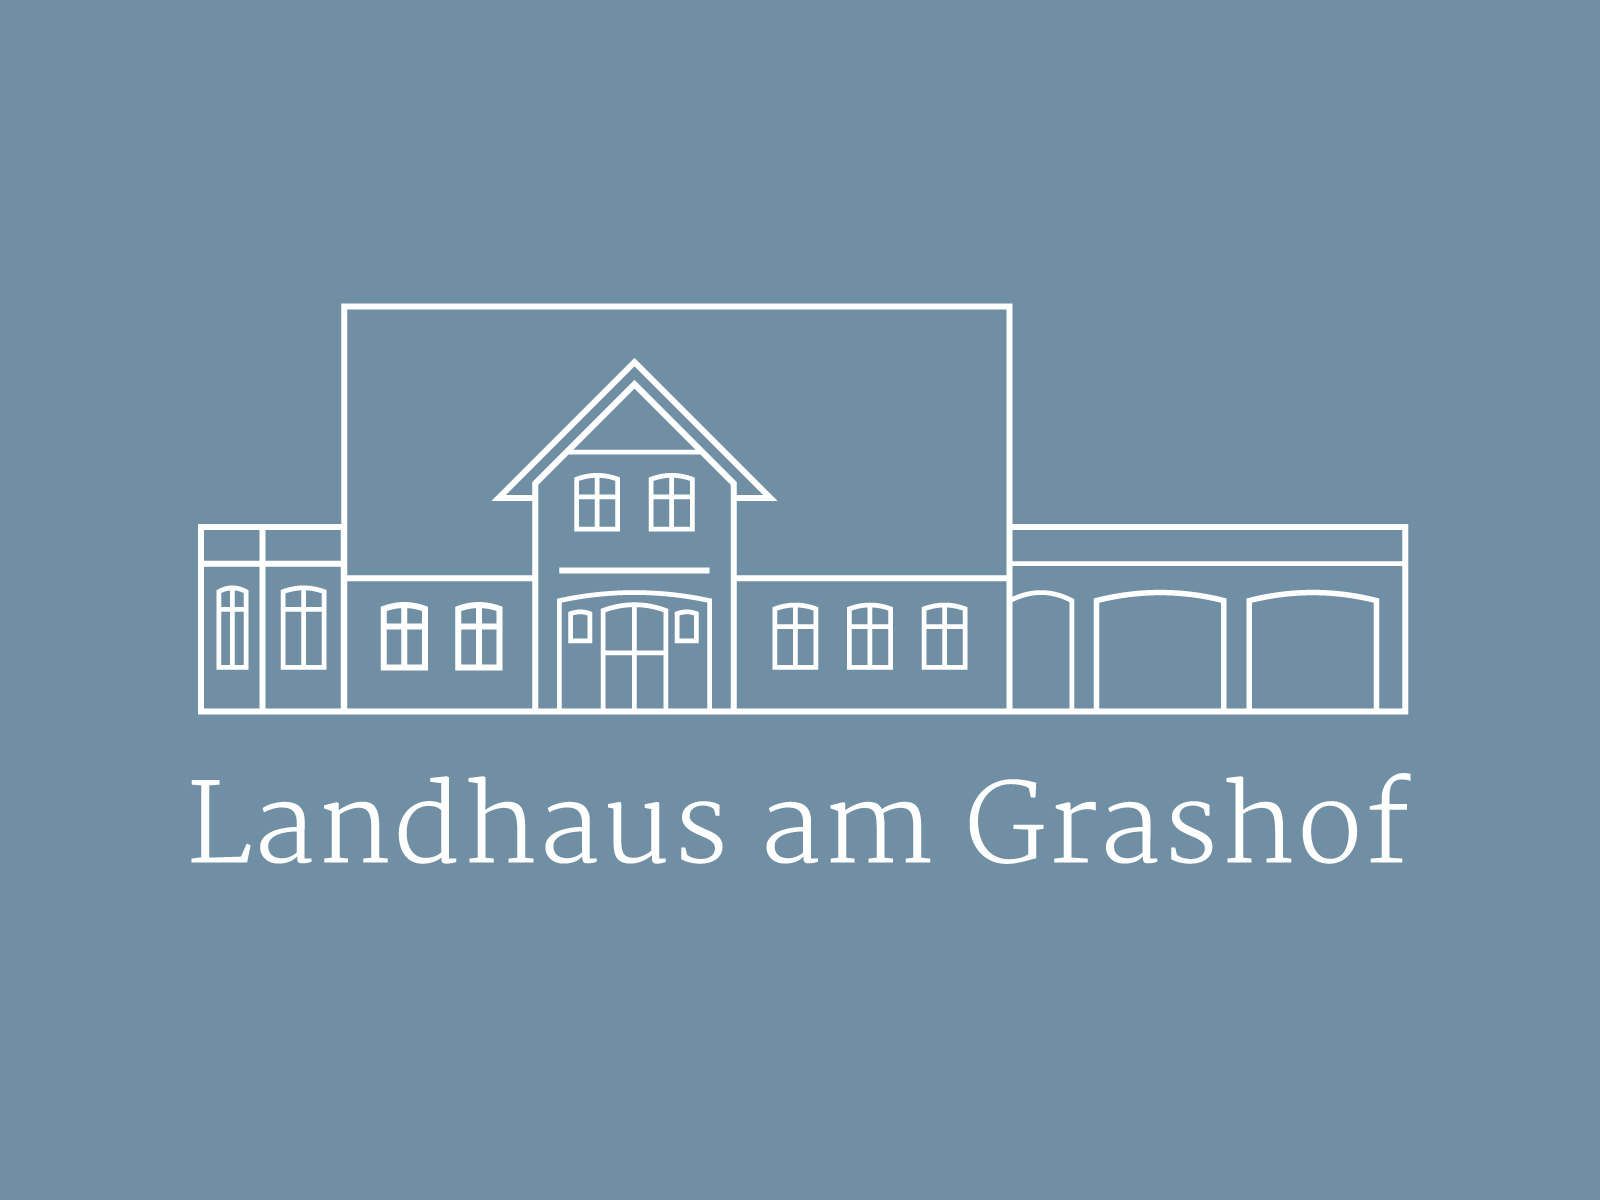 (c) Landhausamgrashof.de